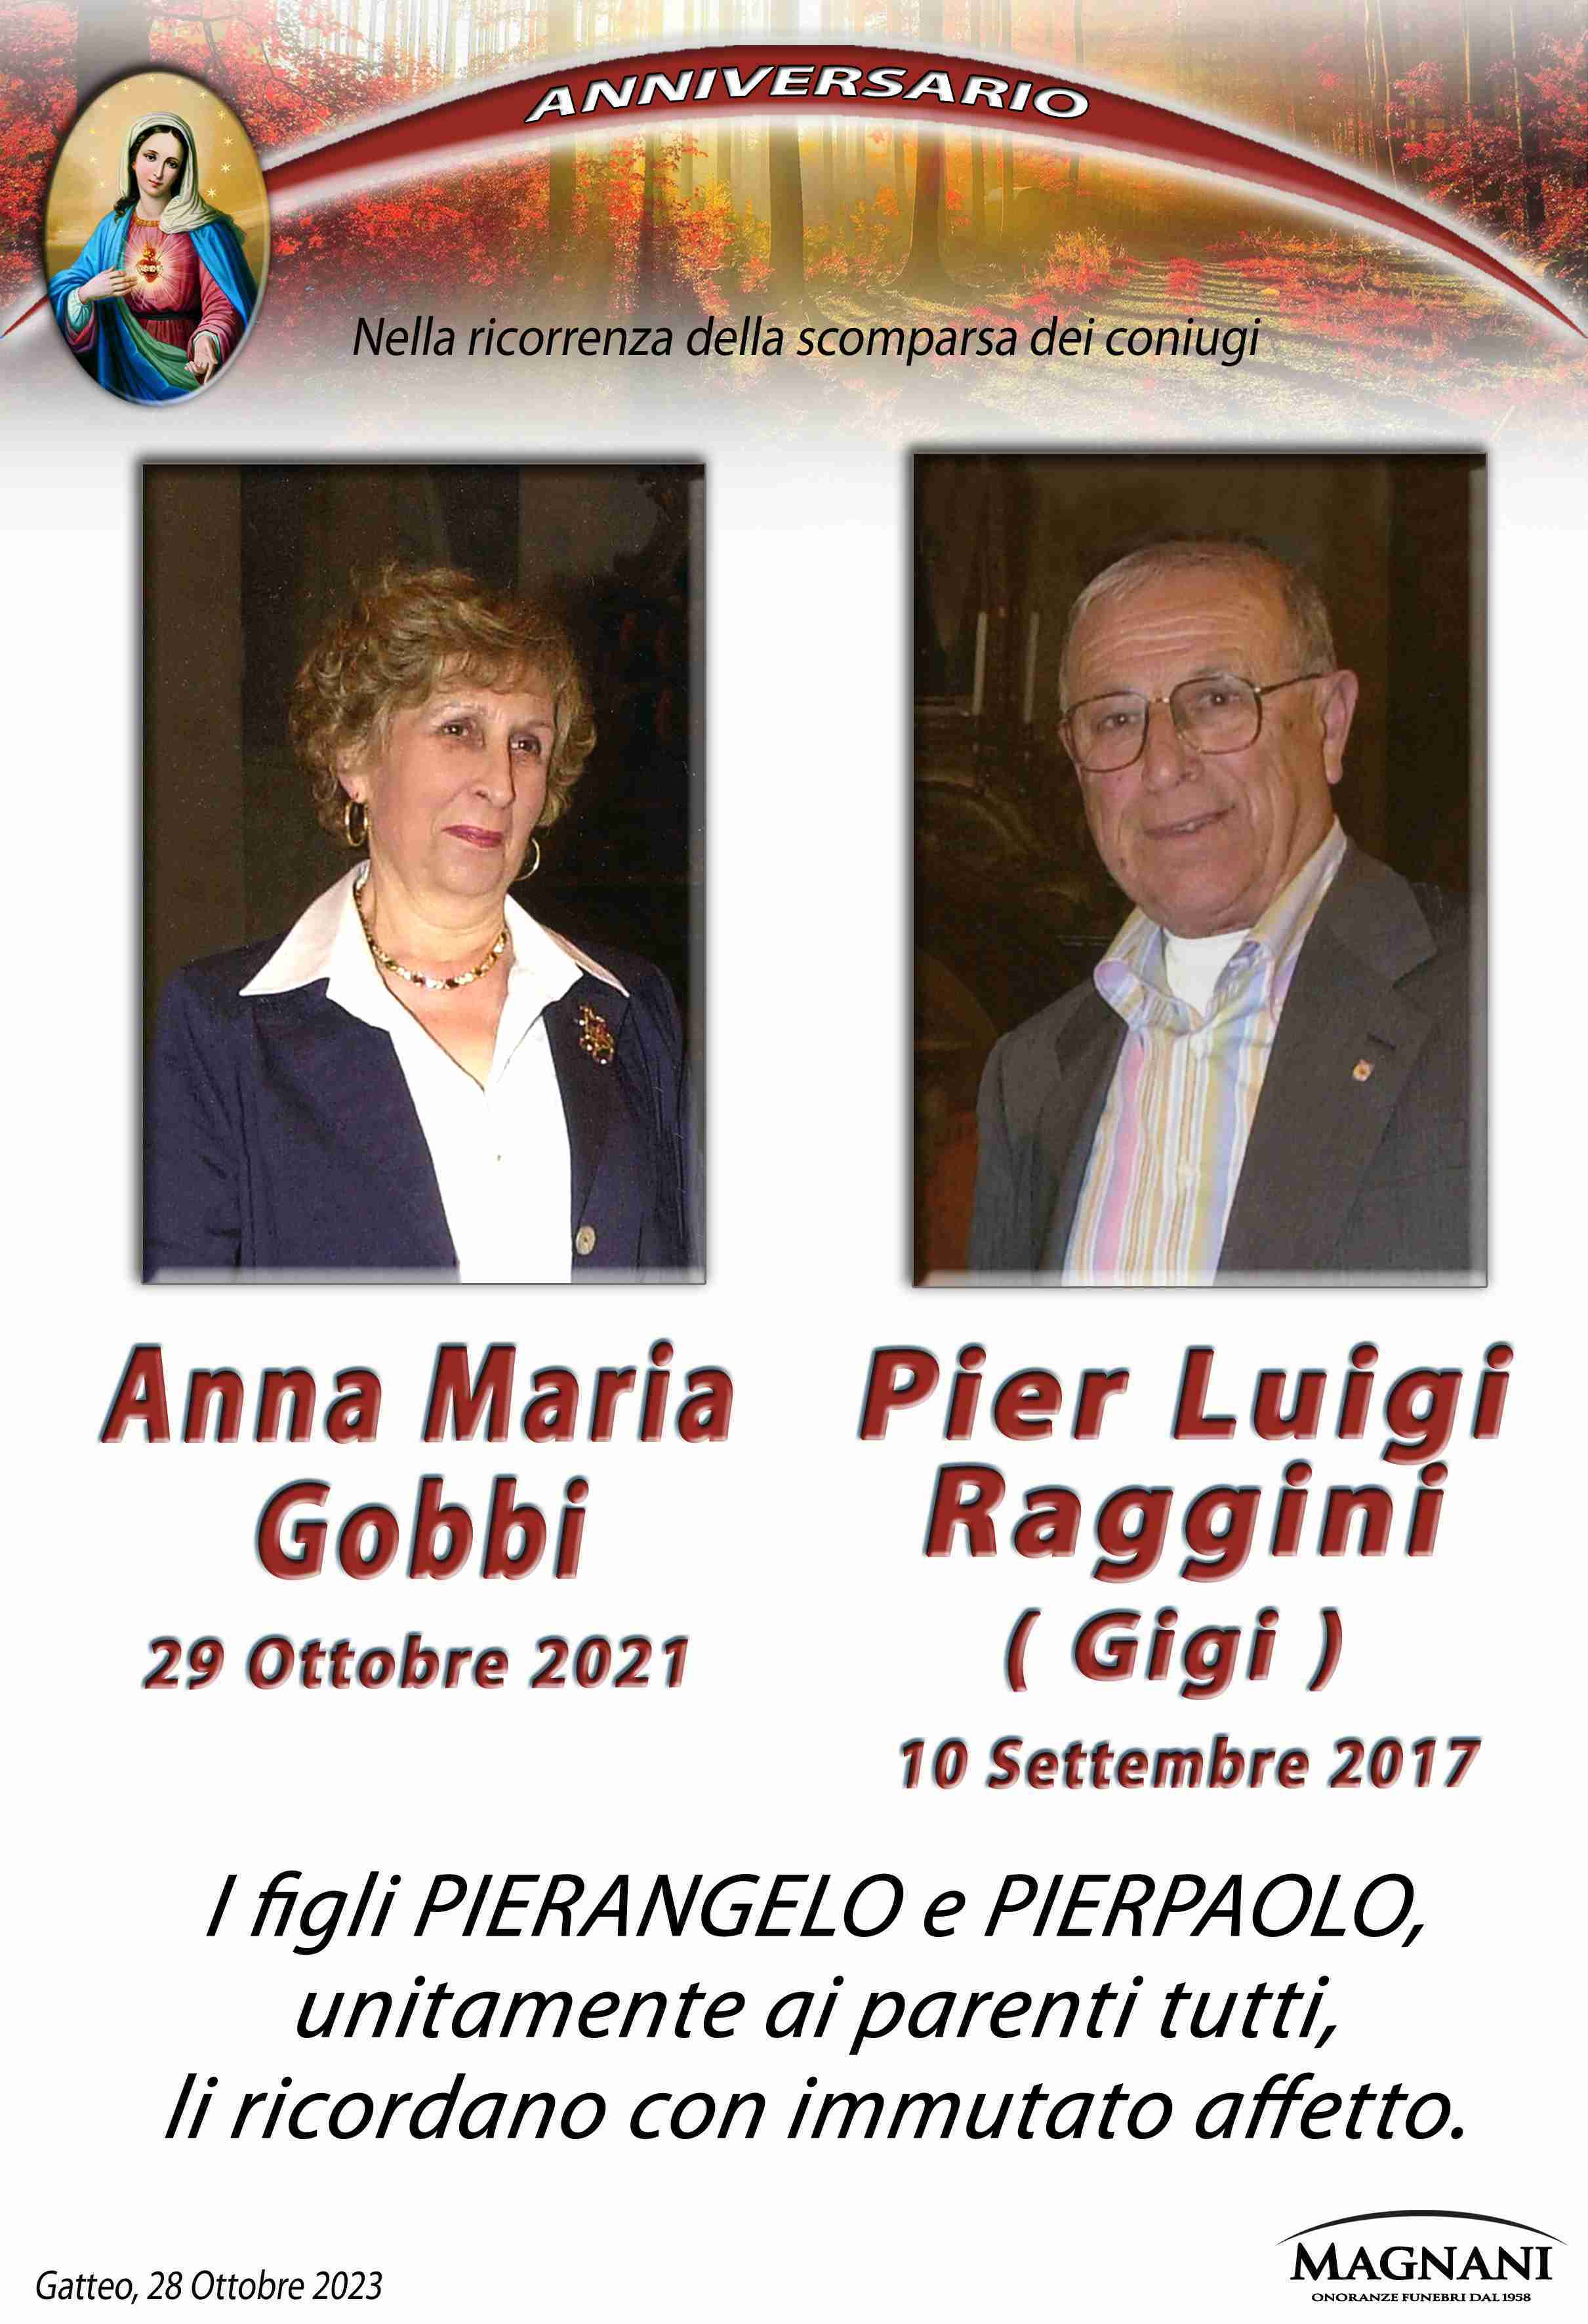 Anna Maria Gobbi e Pier Luigi Raggini